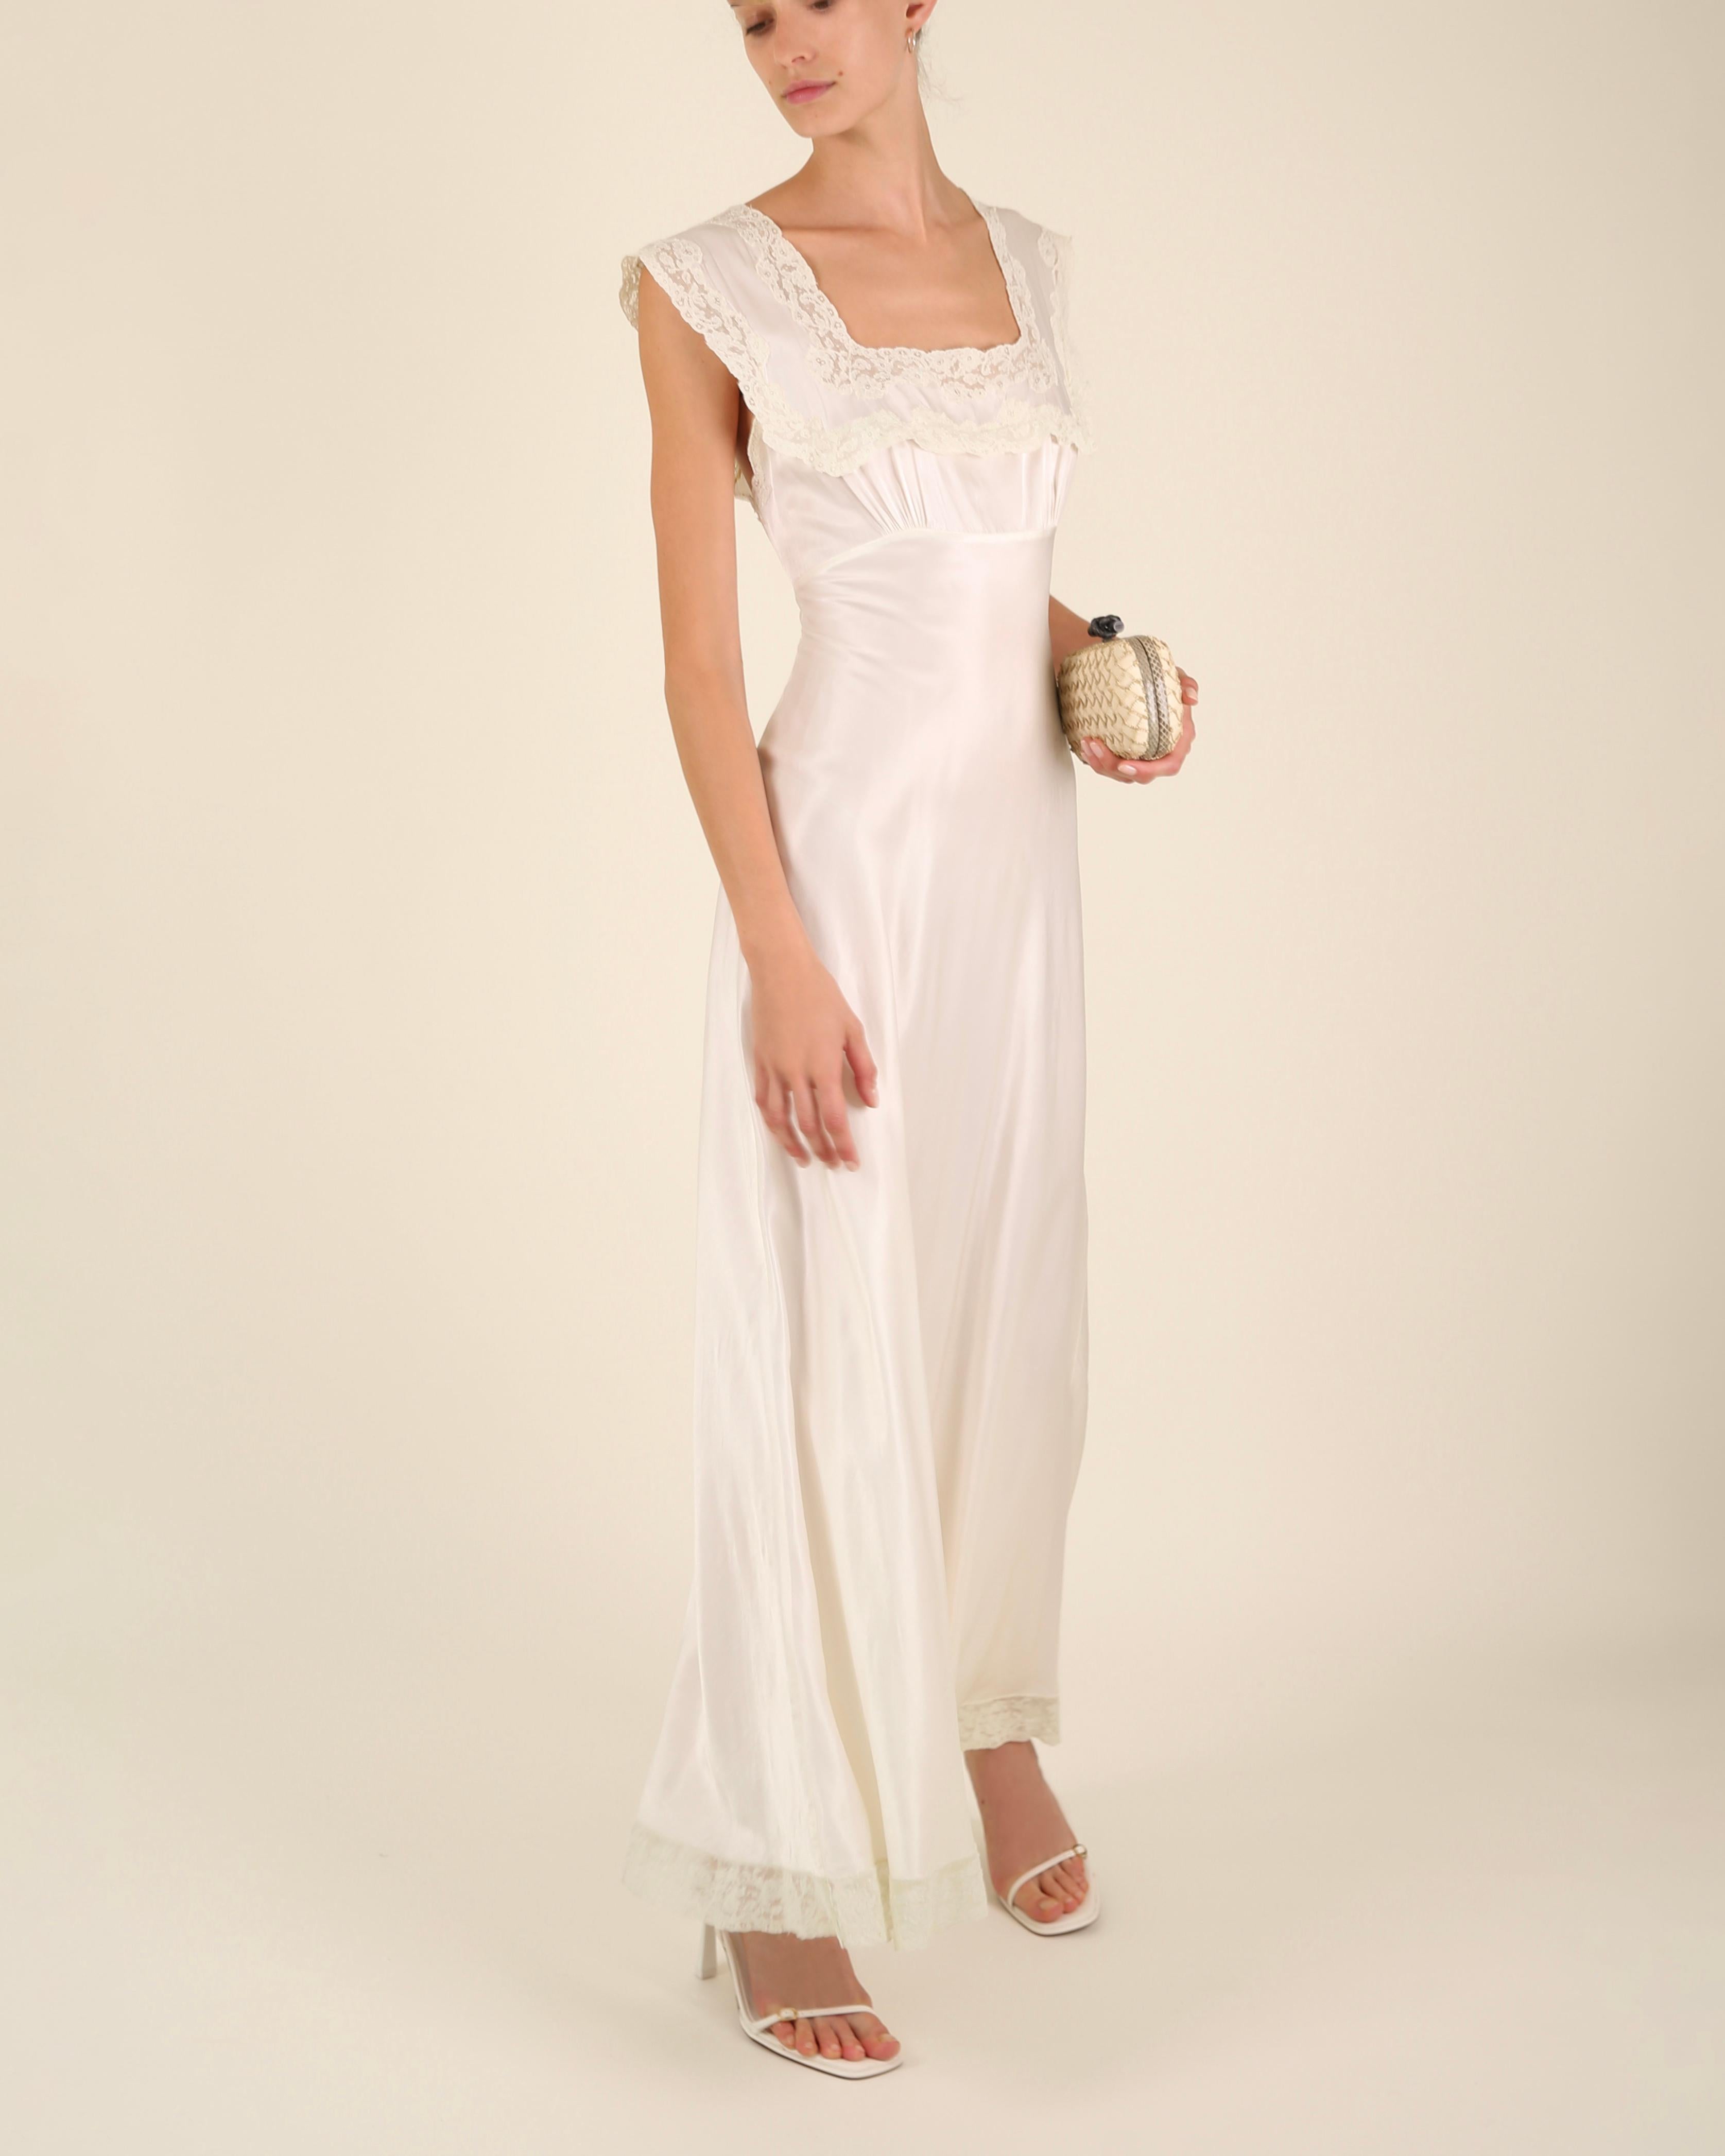 Heavenly Fischer vintage 40s silk white ivory lace wedding night gown slip dress 4